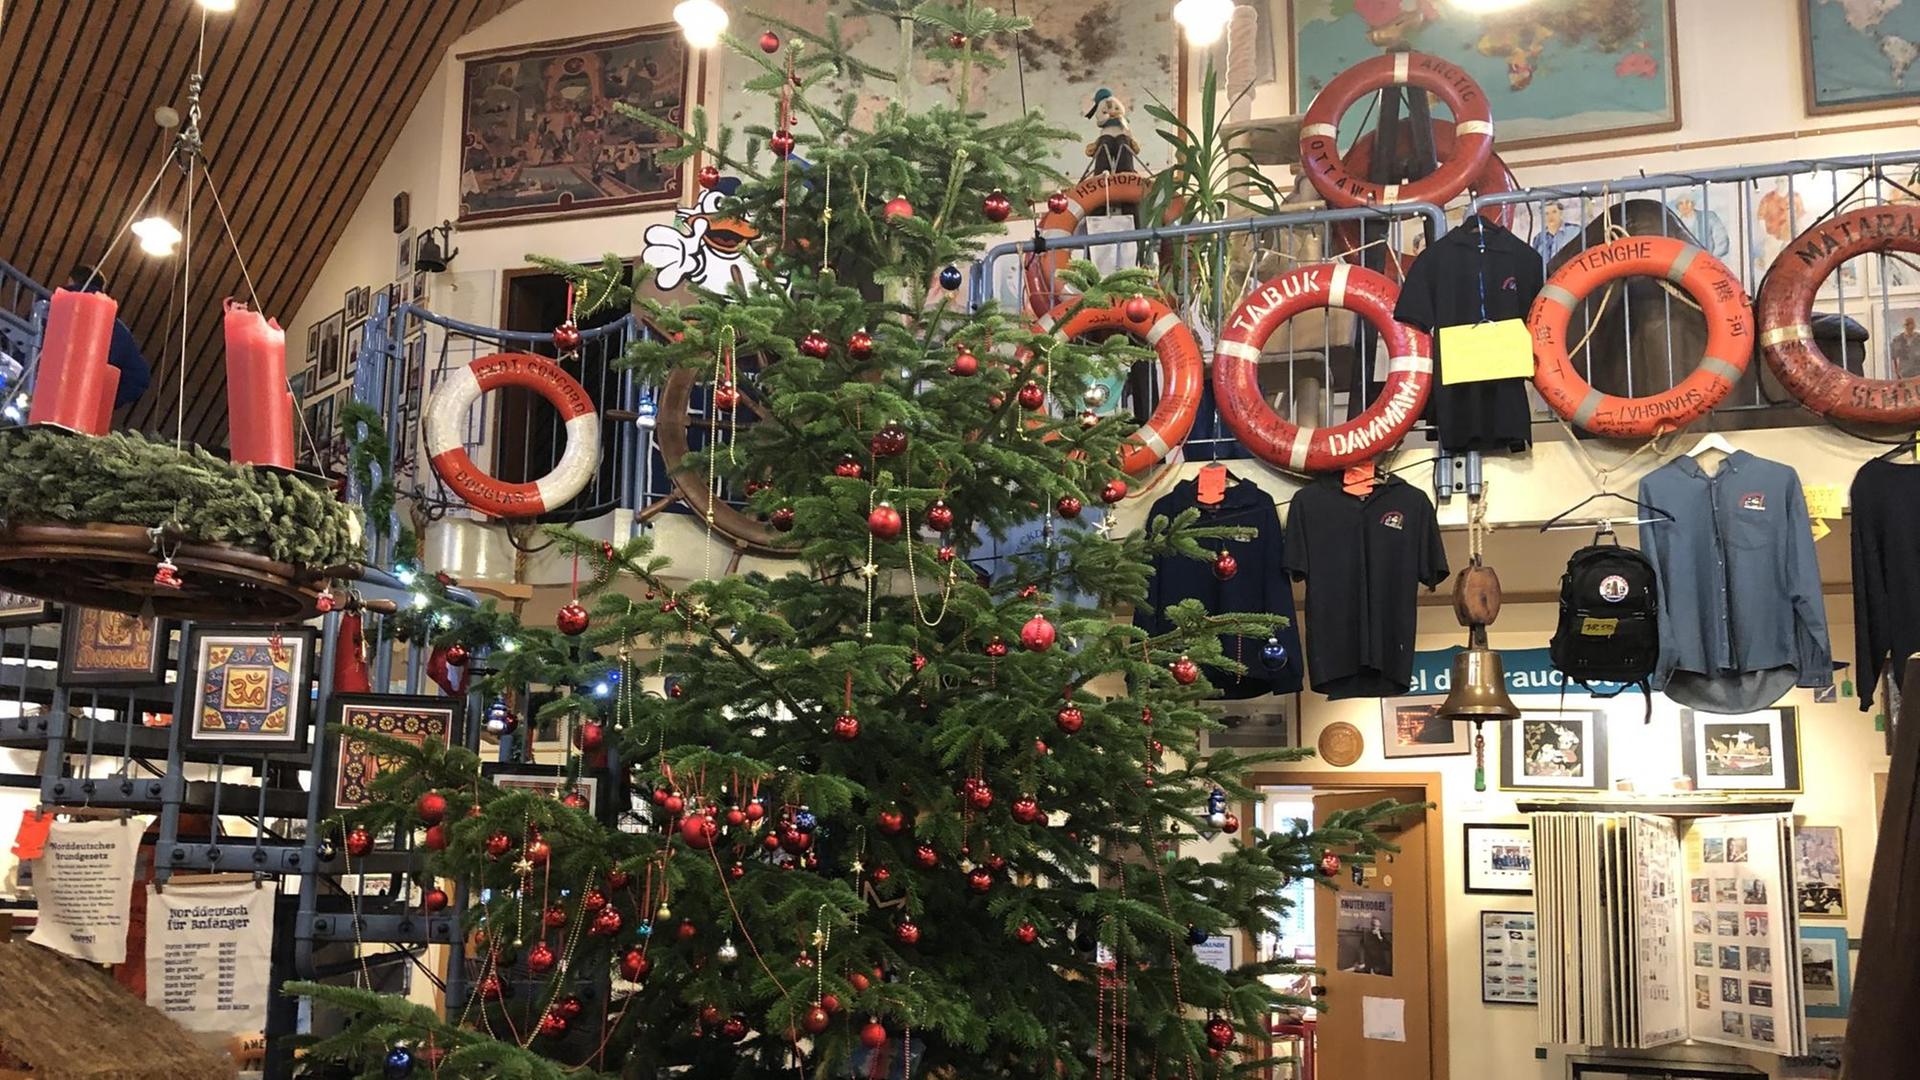 Weihnachtsbaum in der geschmückten Halle im Seemannsclub Duckdalben im Hamburger Hafen.